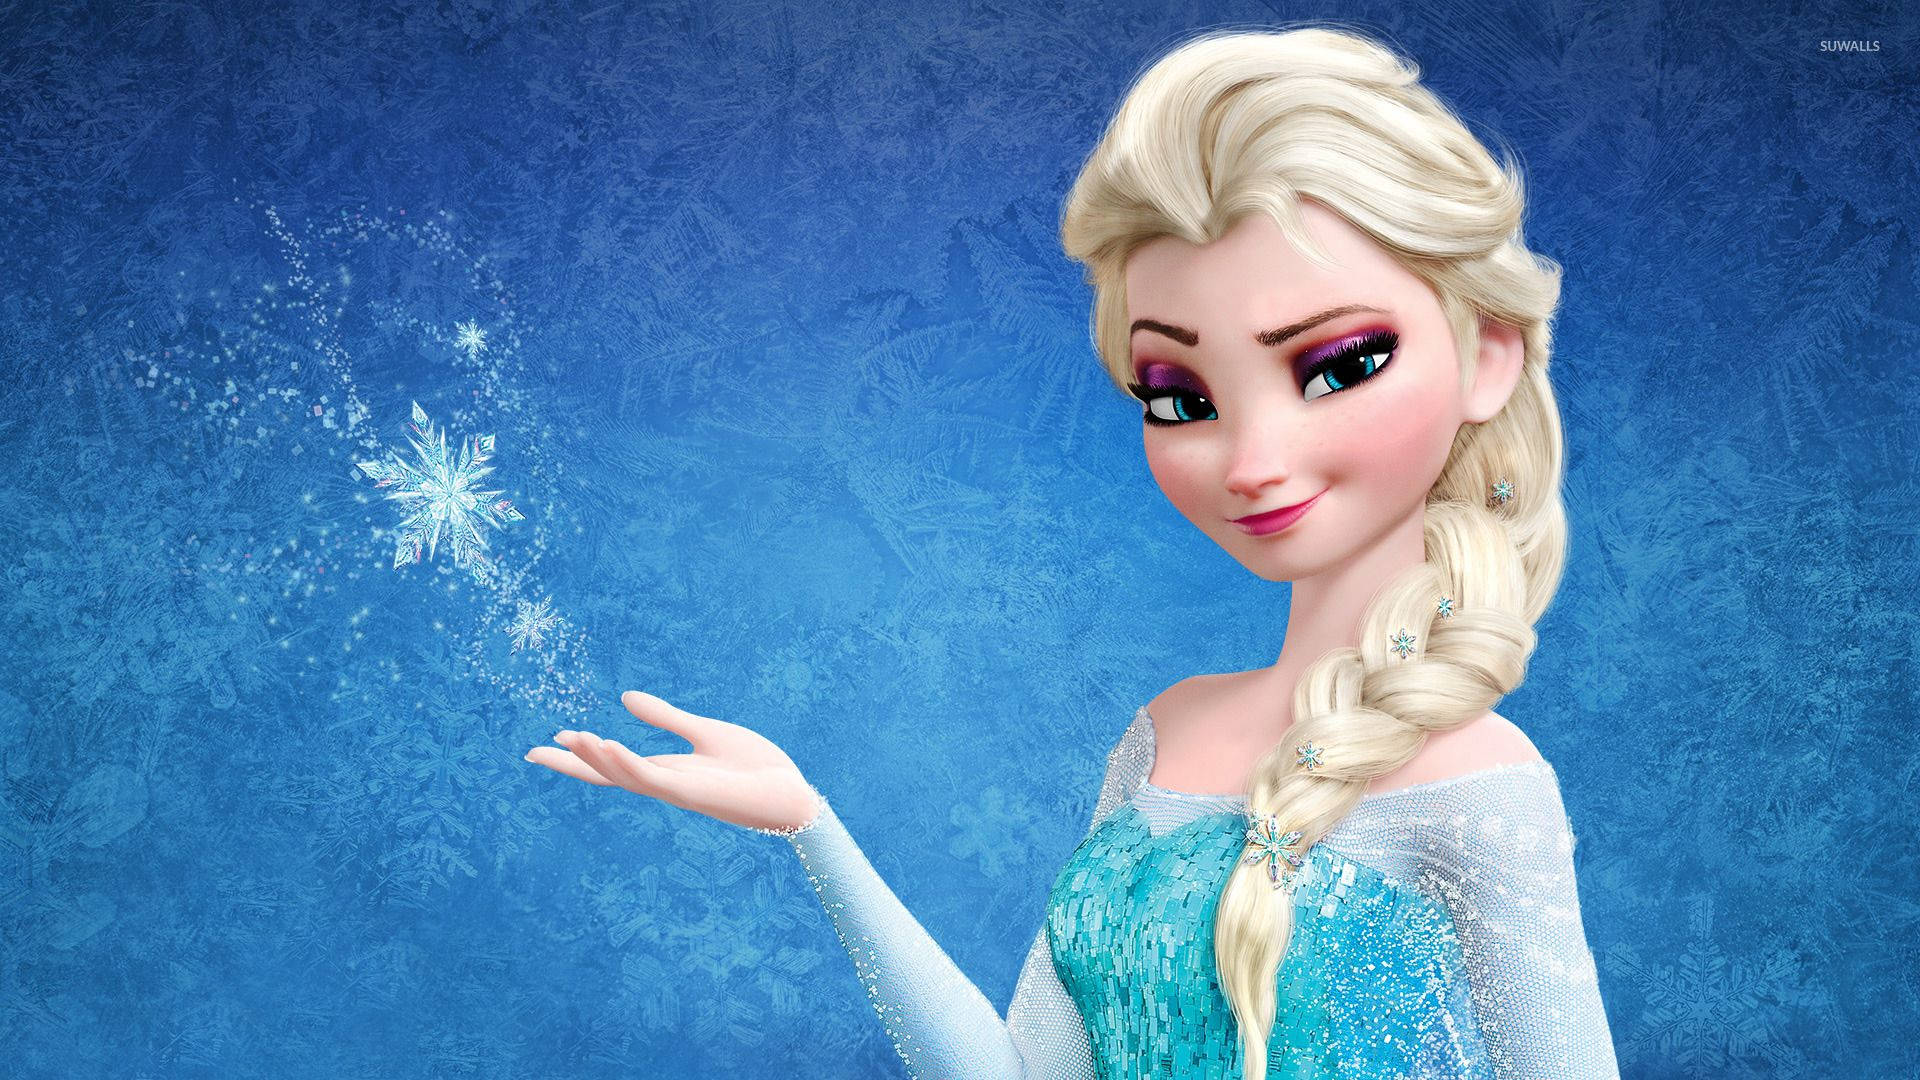 Disney Frozen 2 Snowflake Wallpaper .br